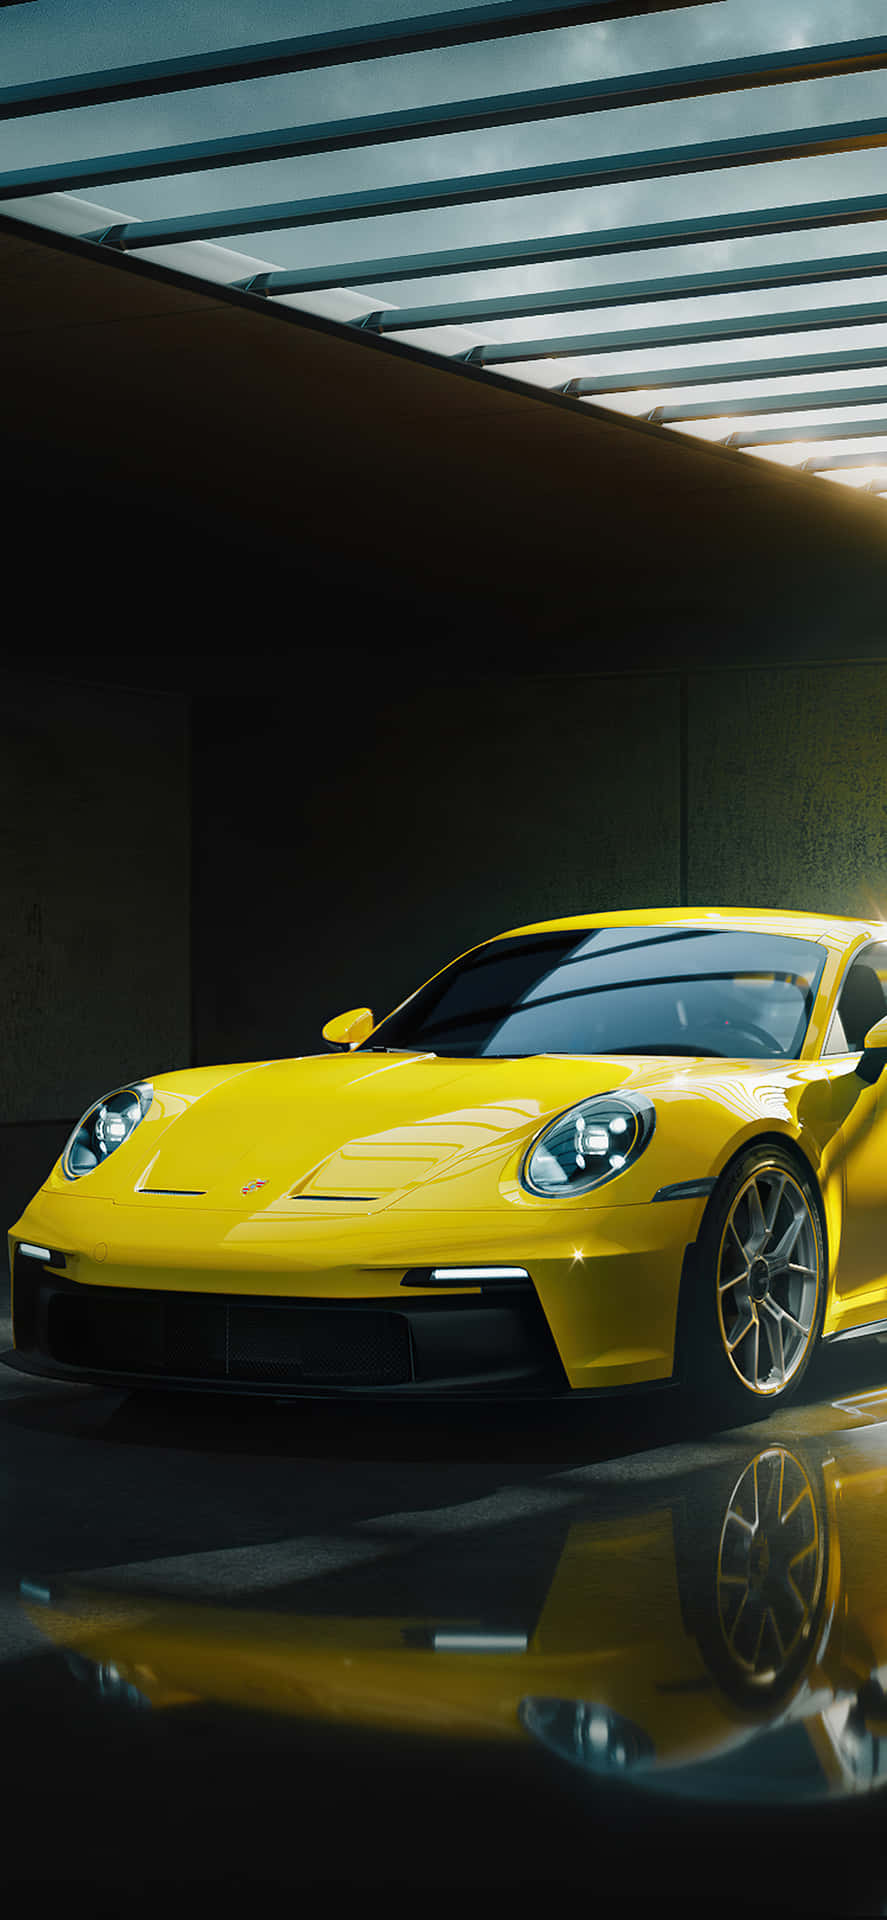 Porsche Sports Car with Sleek Design Wallpaper